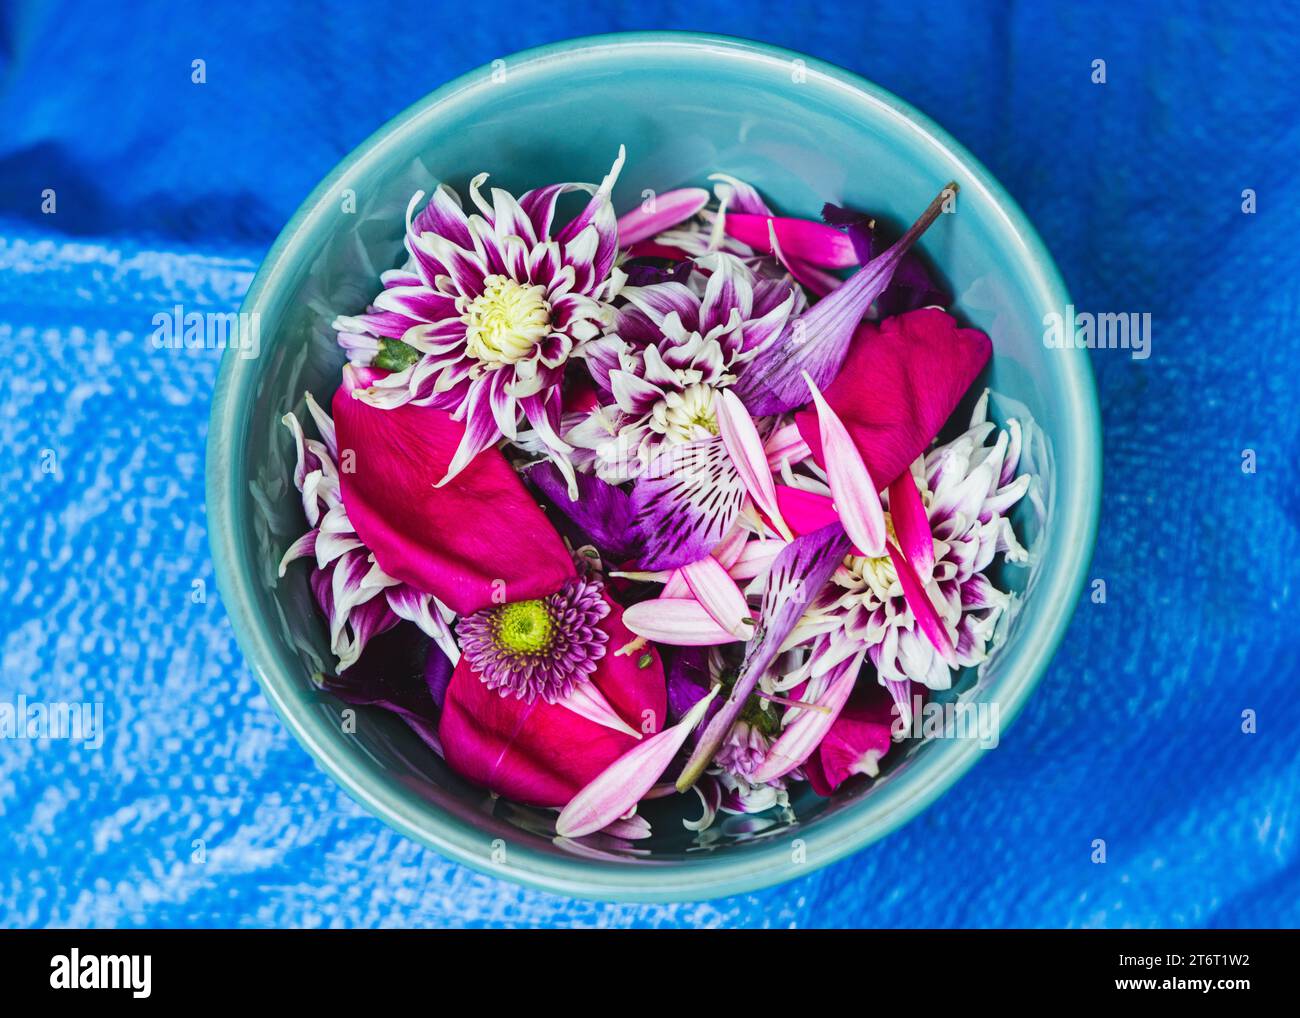 Fleurs et pétales roses et violets dans un bol en céramique turquoise reposant sur un fond bleu texturé. Banque D'Images